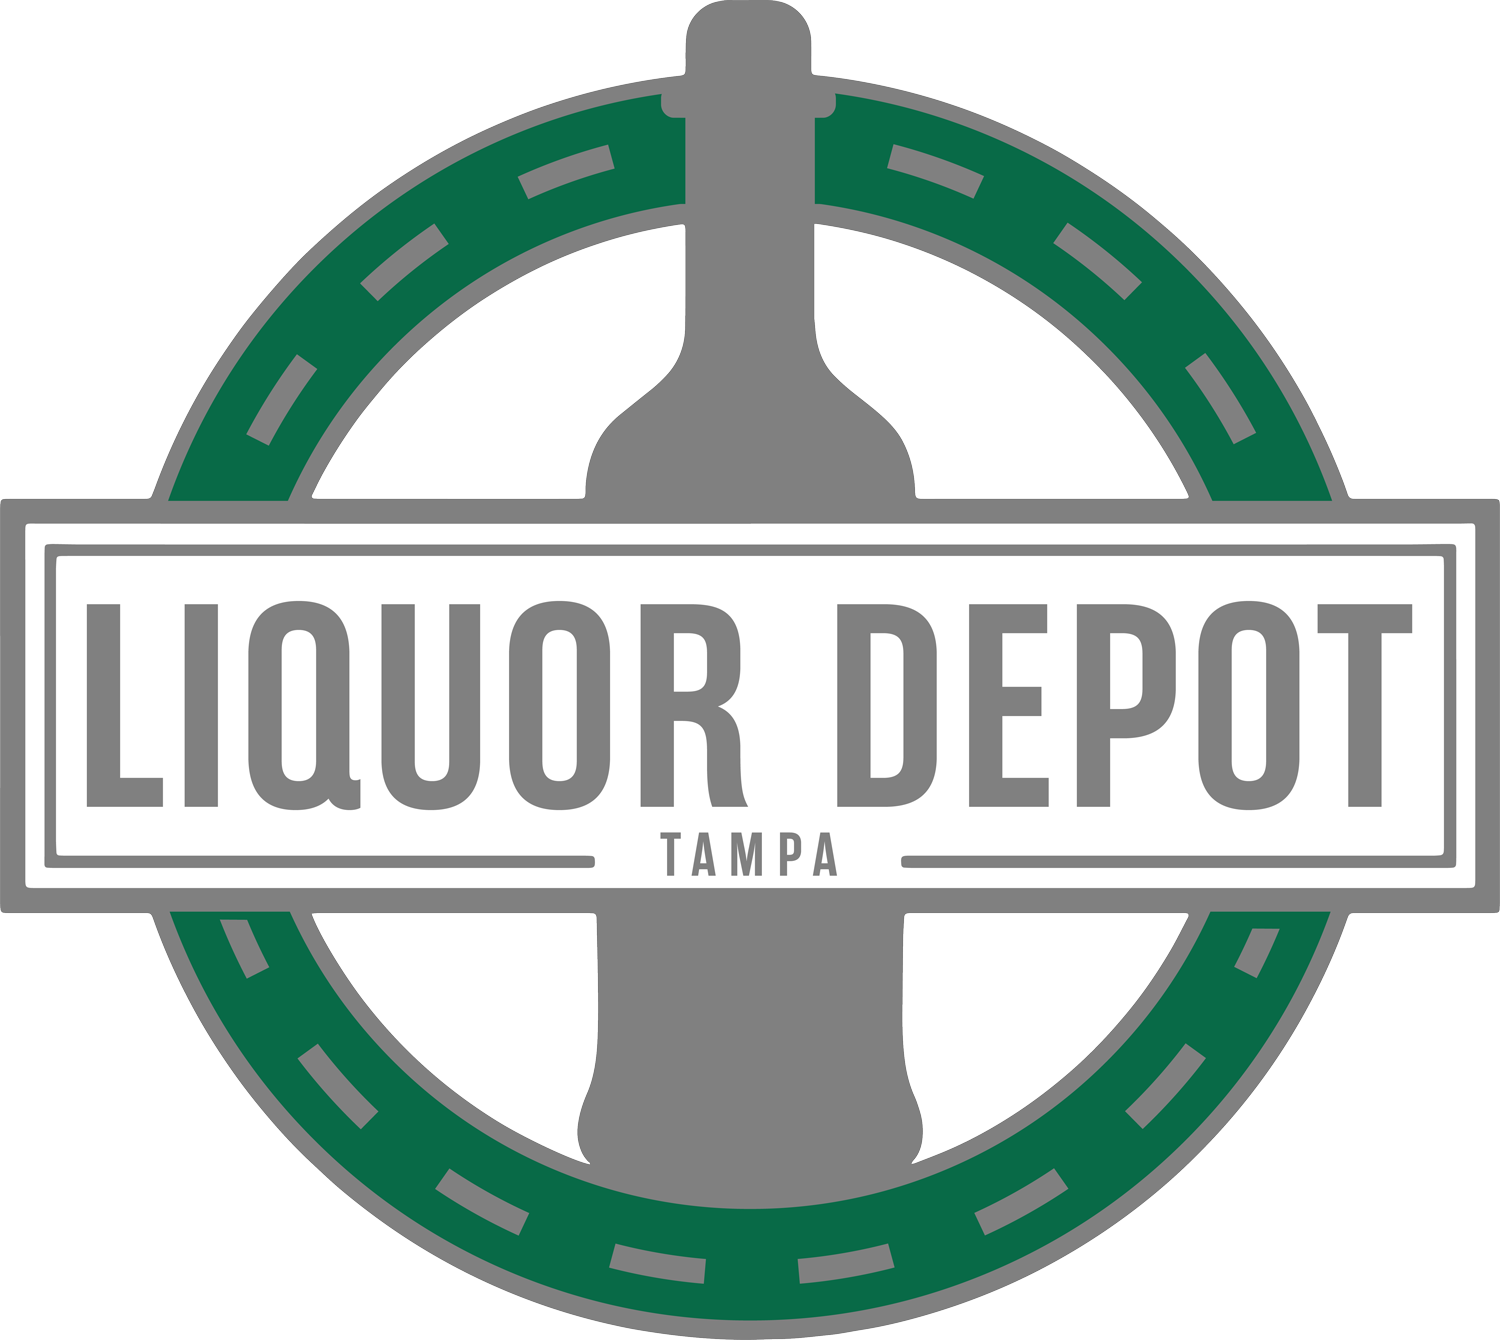 Liquor Depot Tampa